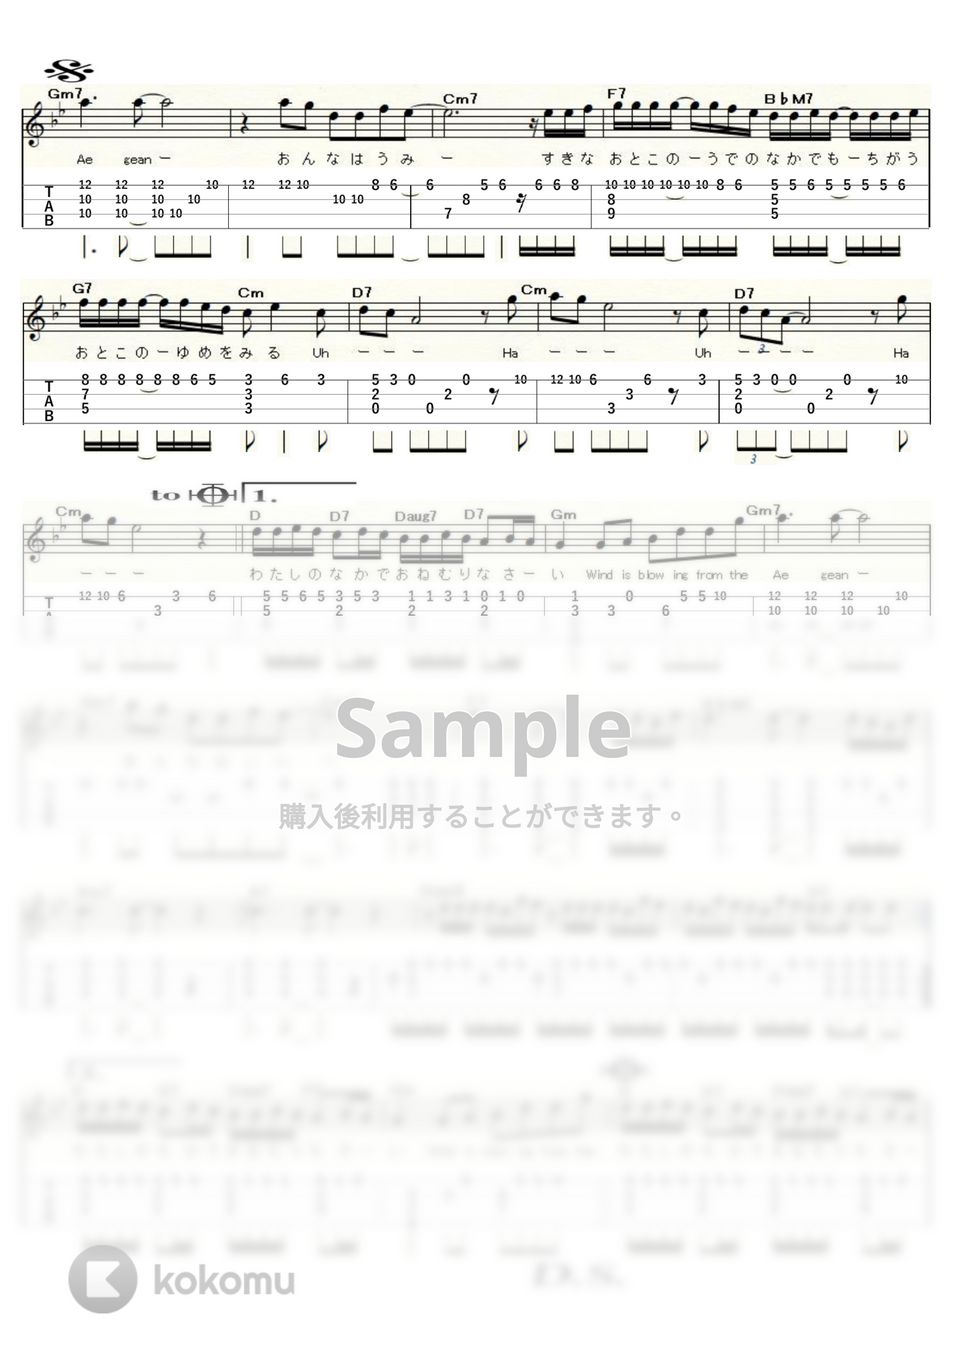 ジュディ・オング - 魅せられて(エーゲ海のテーマ) (ｳｸﾚﾚｿﾛ / High-G,Low-G / 中～上級) by ukulelepapa